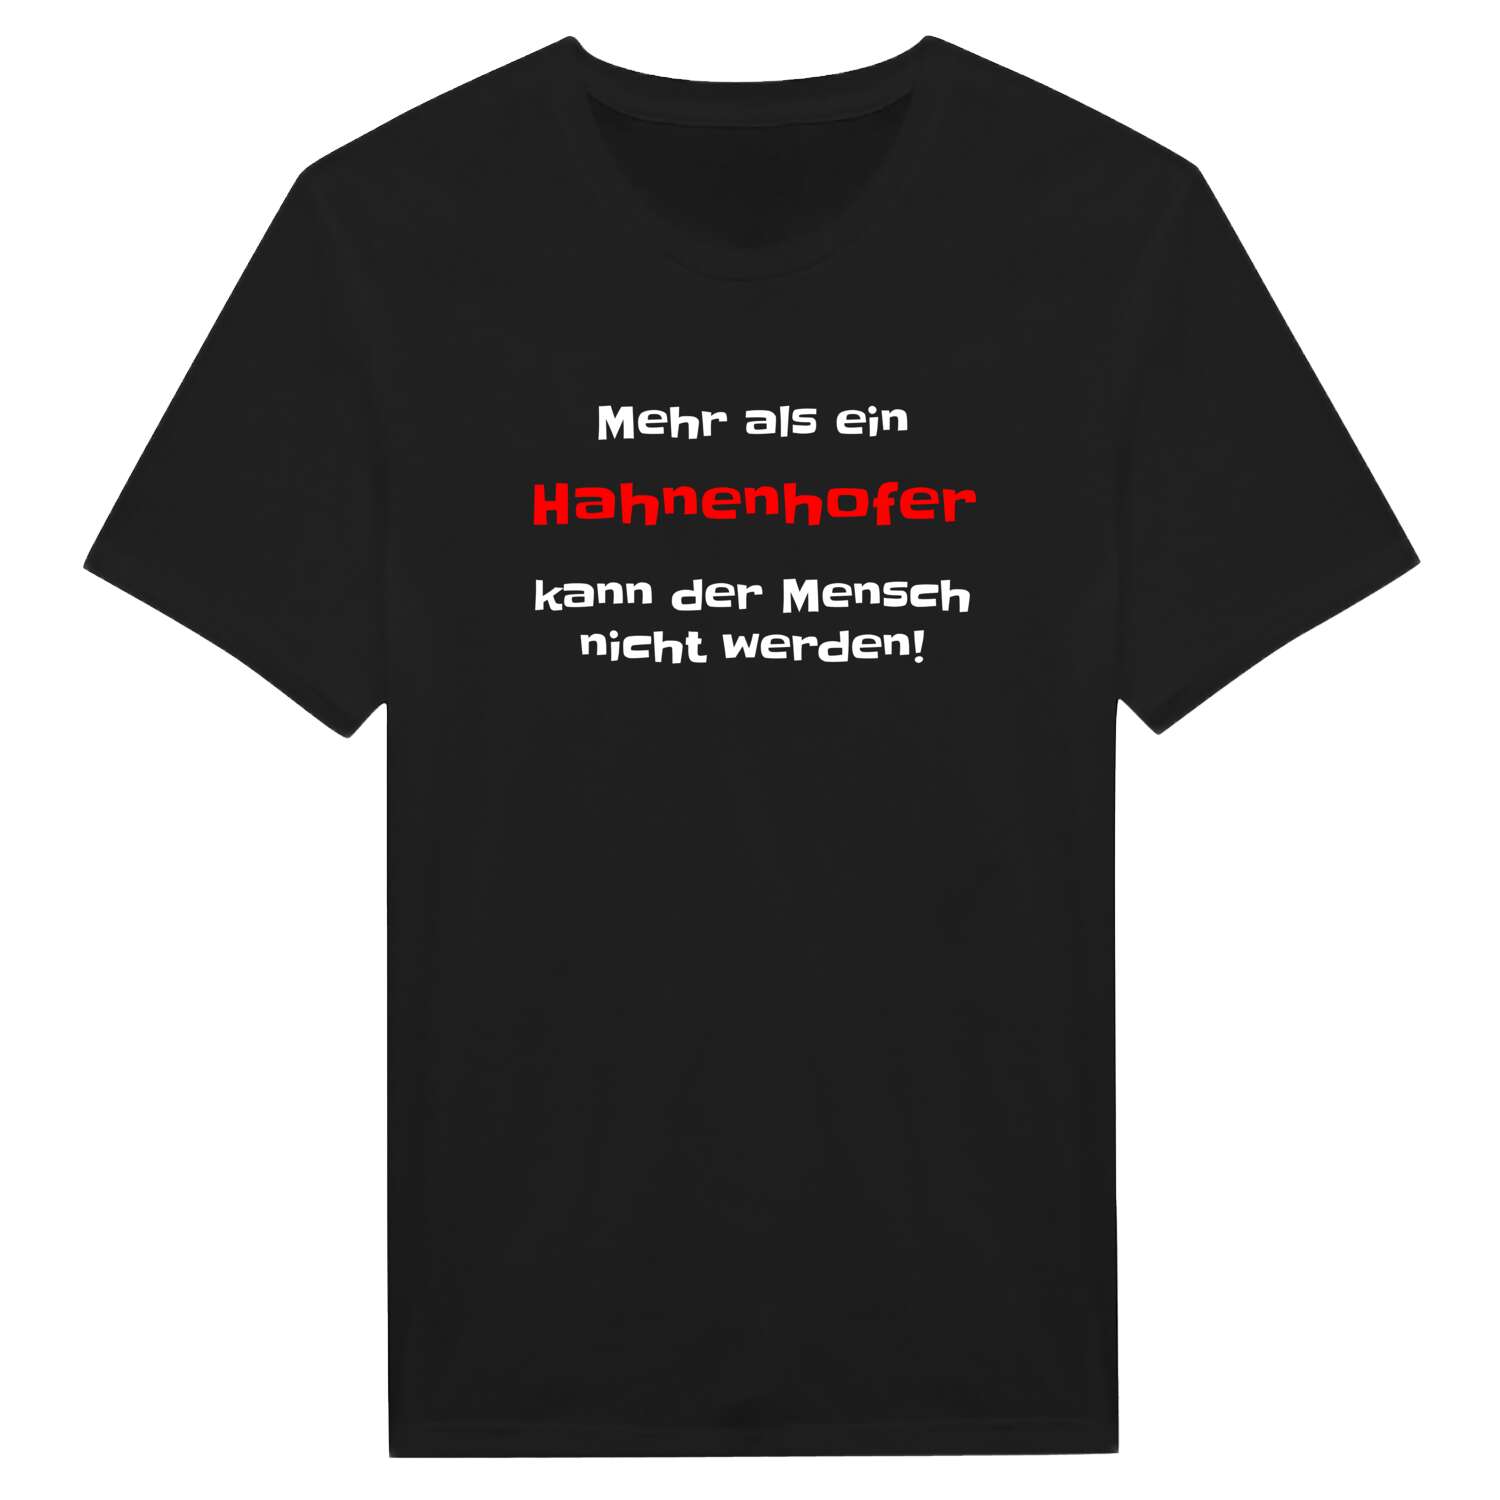 Hahnenhof T-Shirt »Mehr als ein«